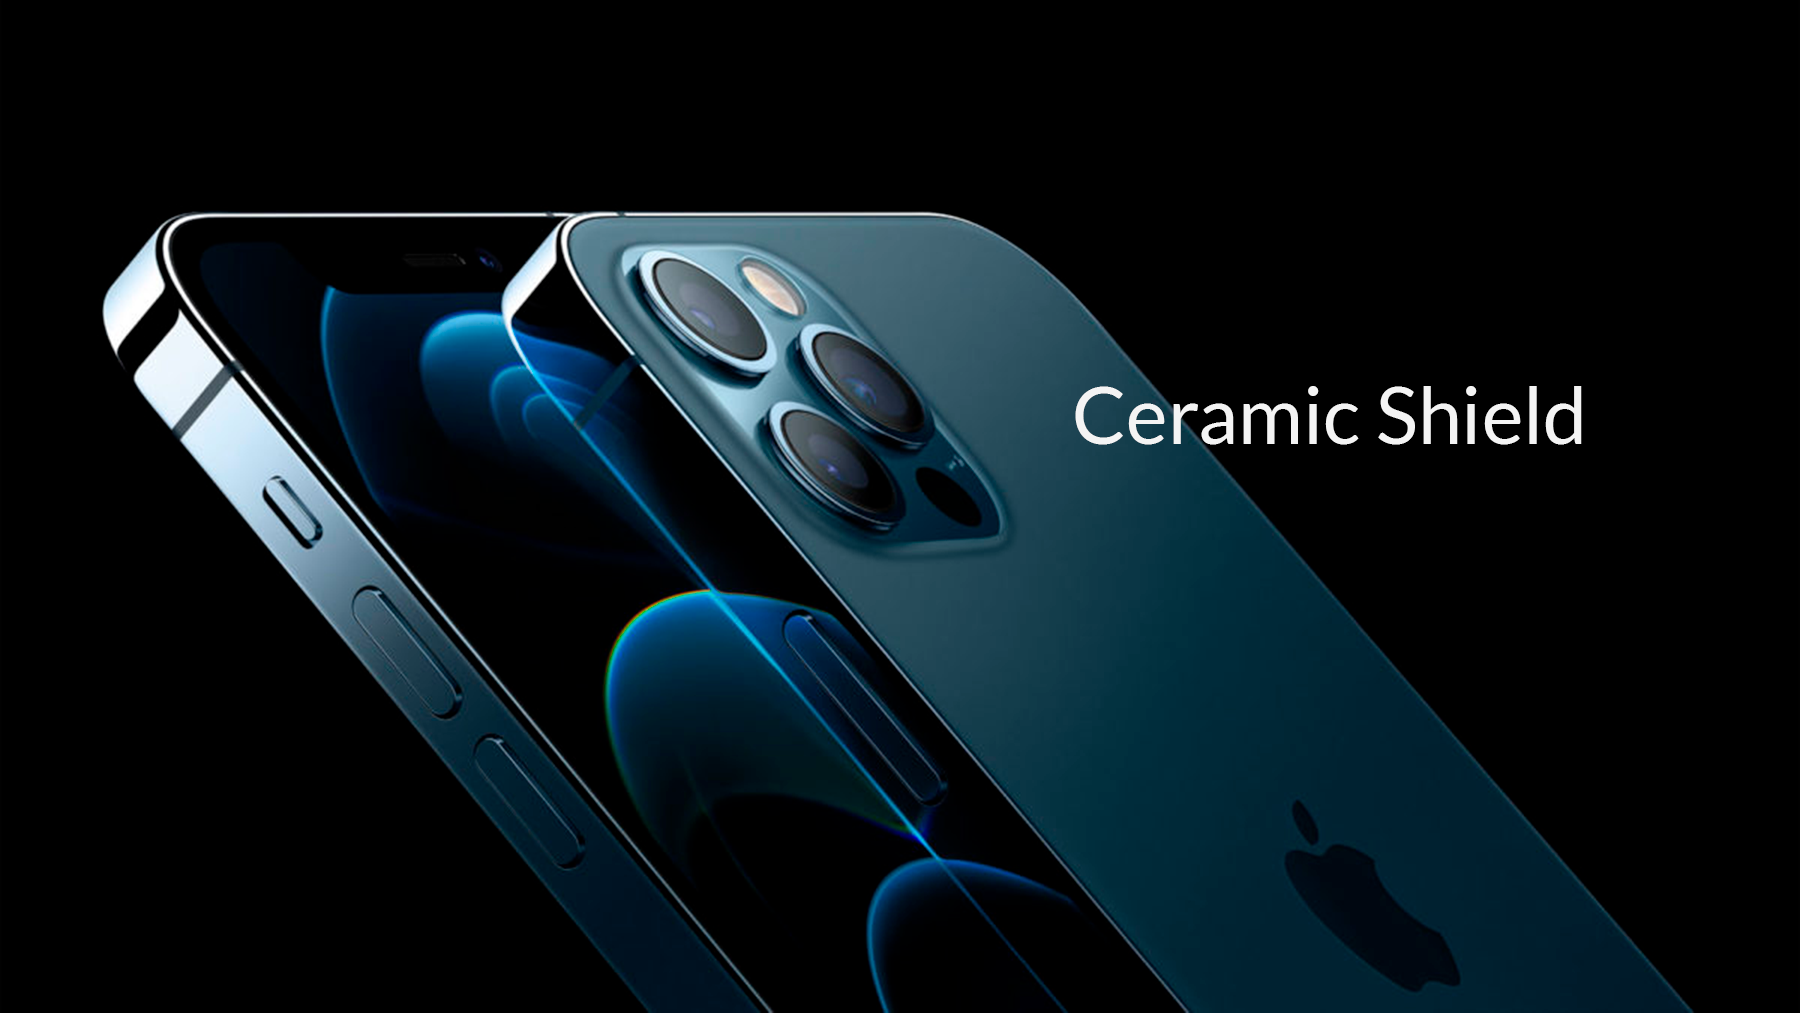 O vidro Cerâmic Shield do iPhone é quatro vezes mais resistente a quedas e arranhões.